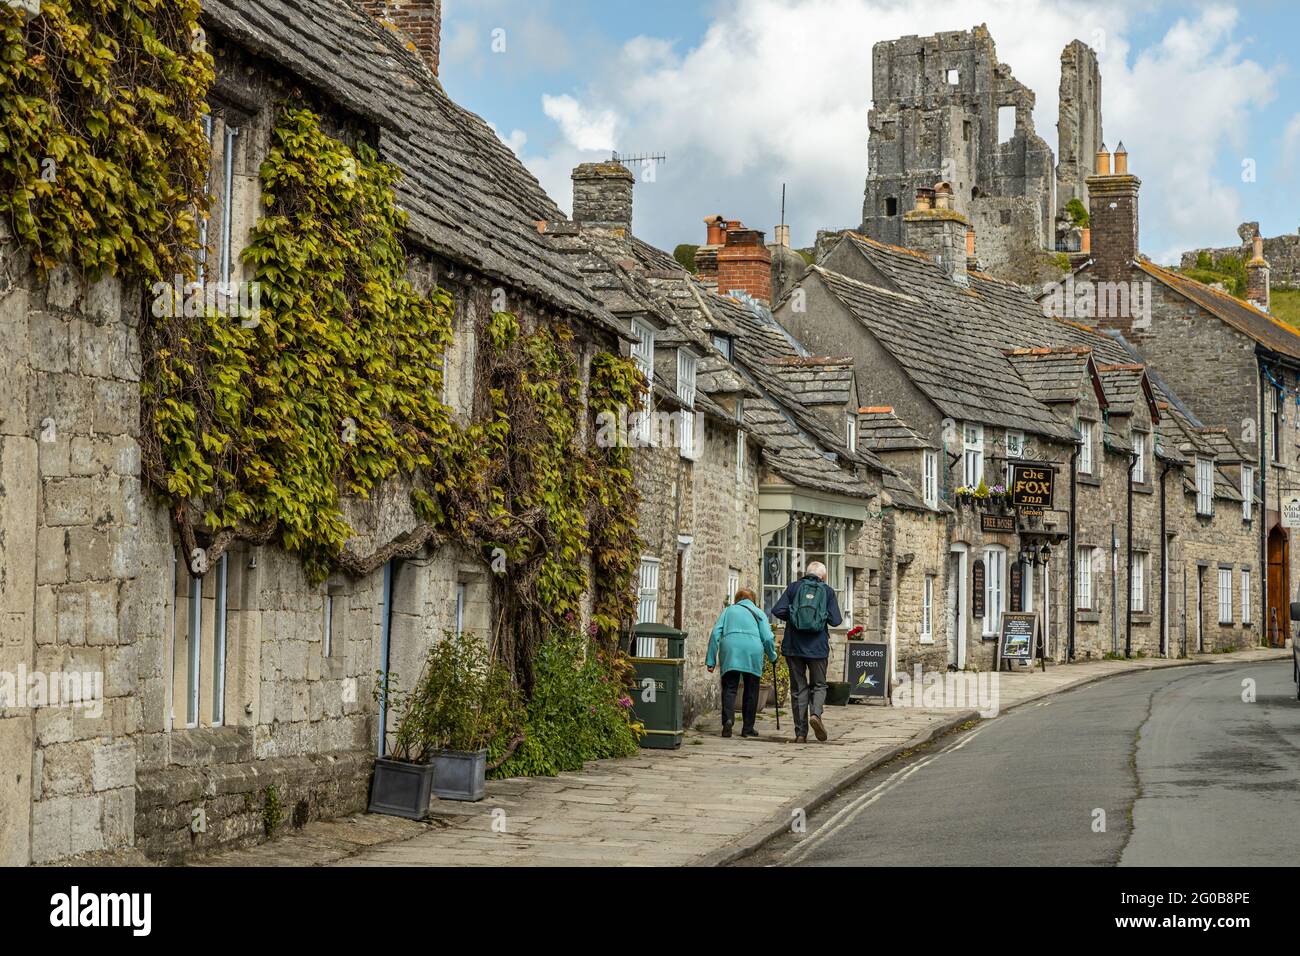 Ein Seniorenpaar geht durch das malerische, idyllische, malerische Dorf Corfe, das ursprünglich eine sächsische Hochburg in den Purbeck-Hügeln, Dorset England, war Stockfoto